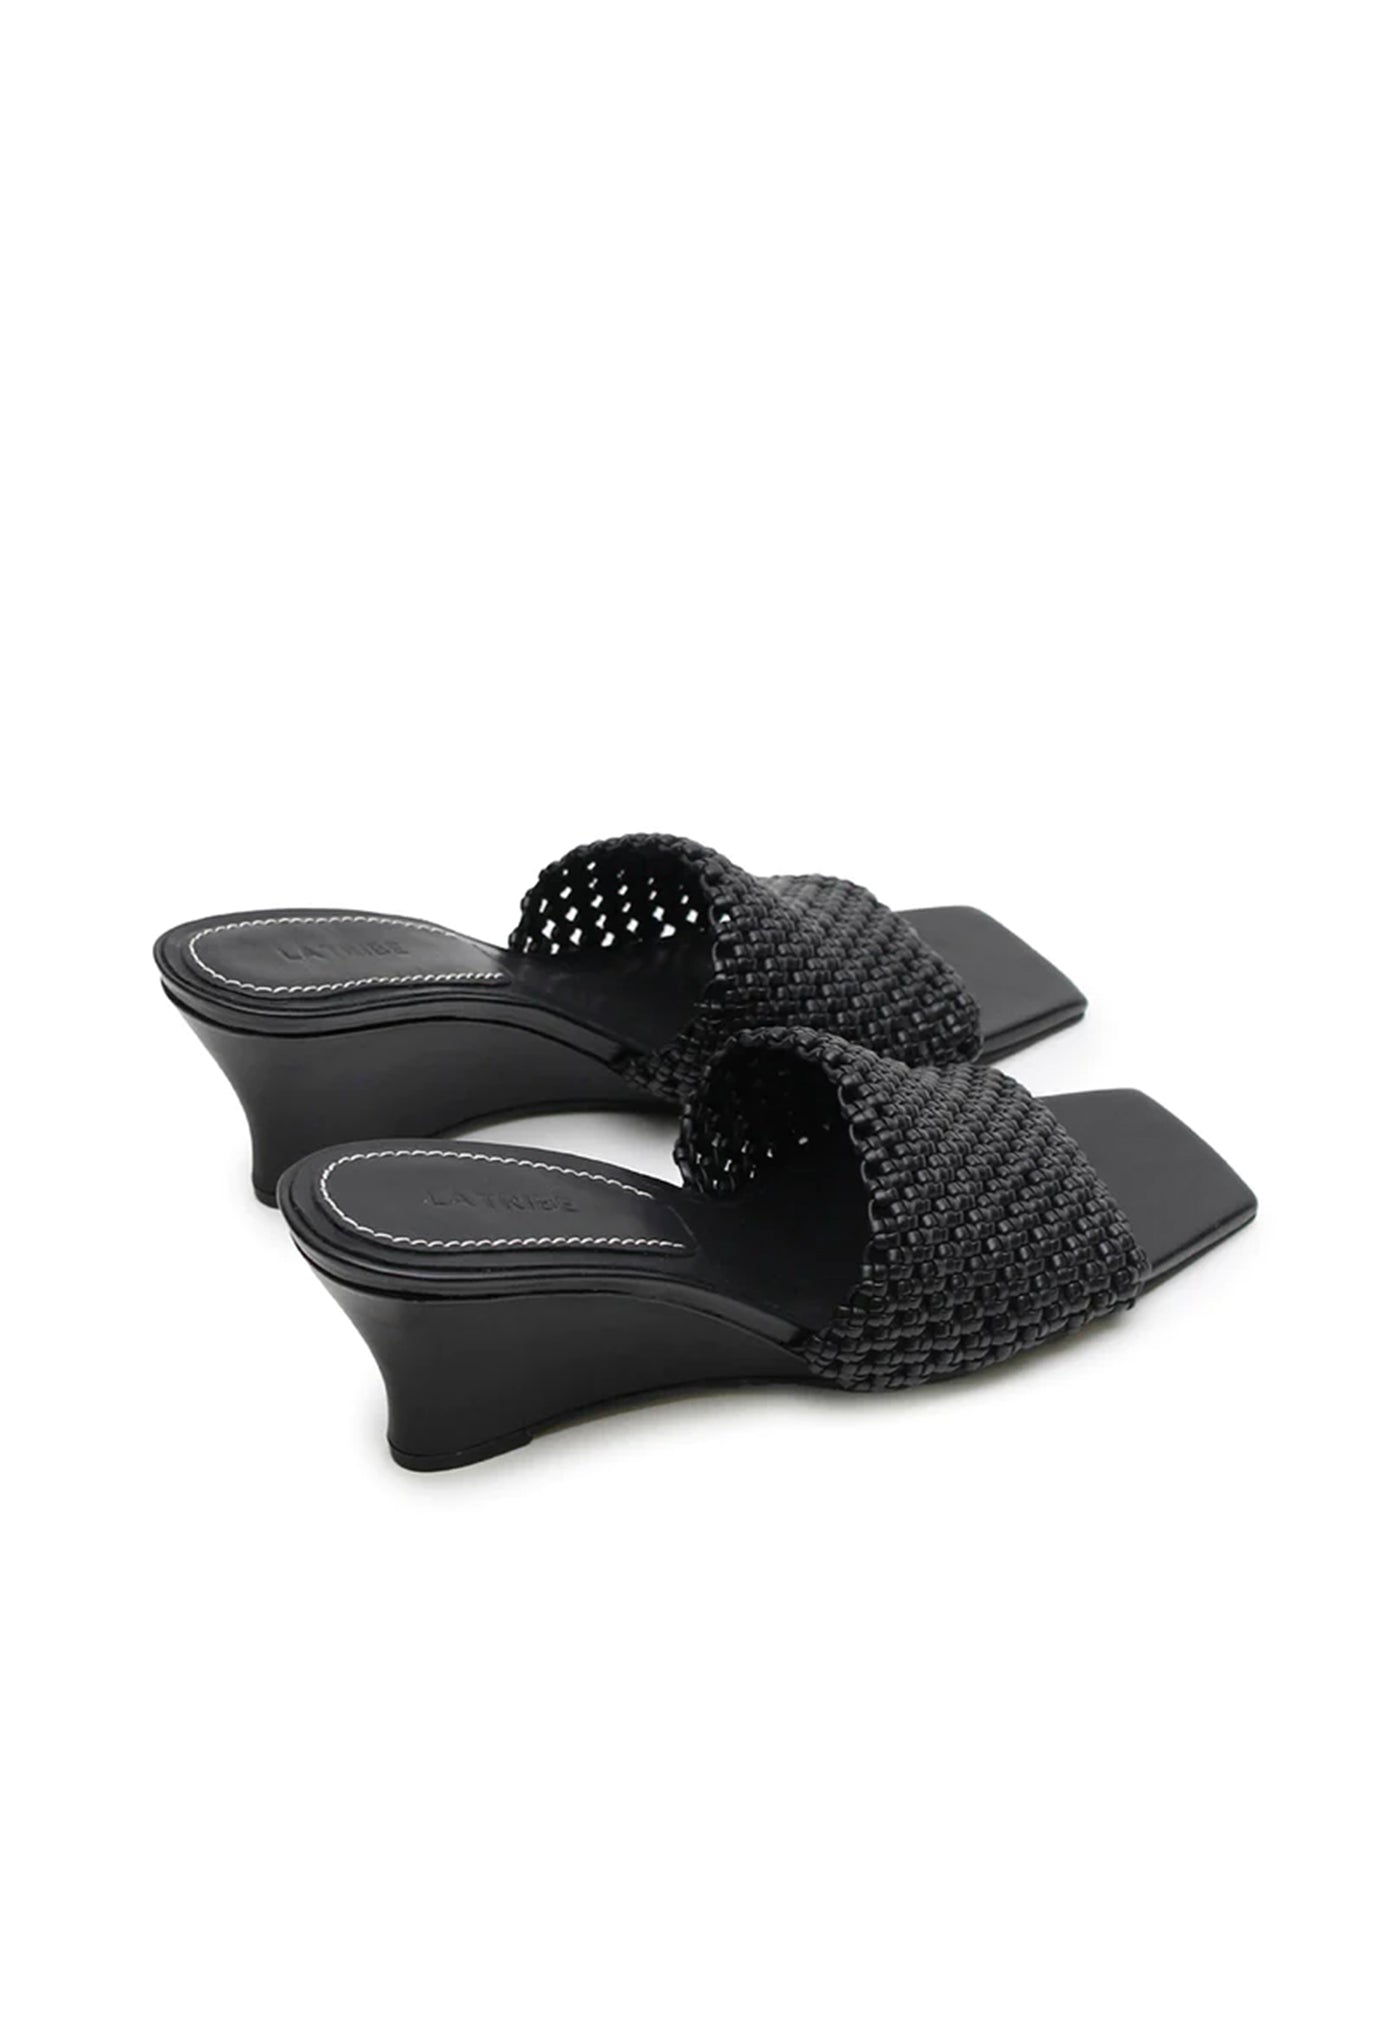 Braided Wedge Heel - Black sold by Angel Divine